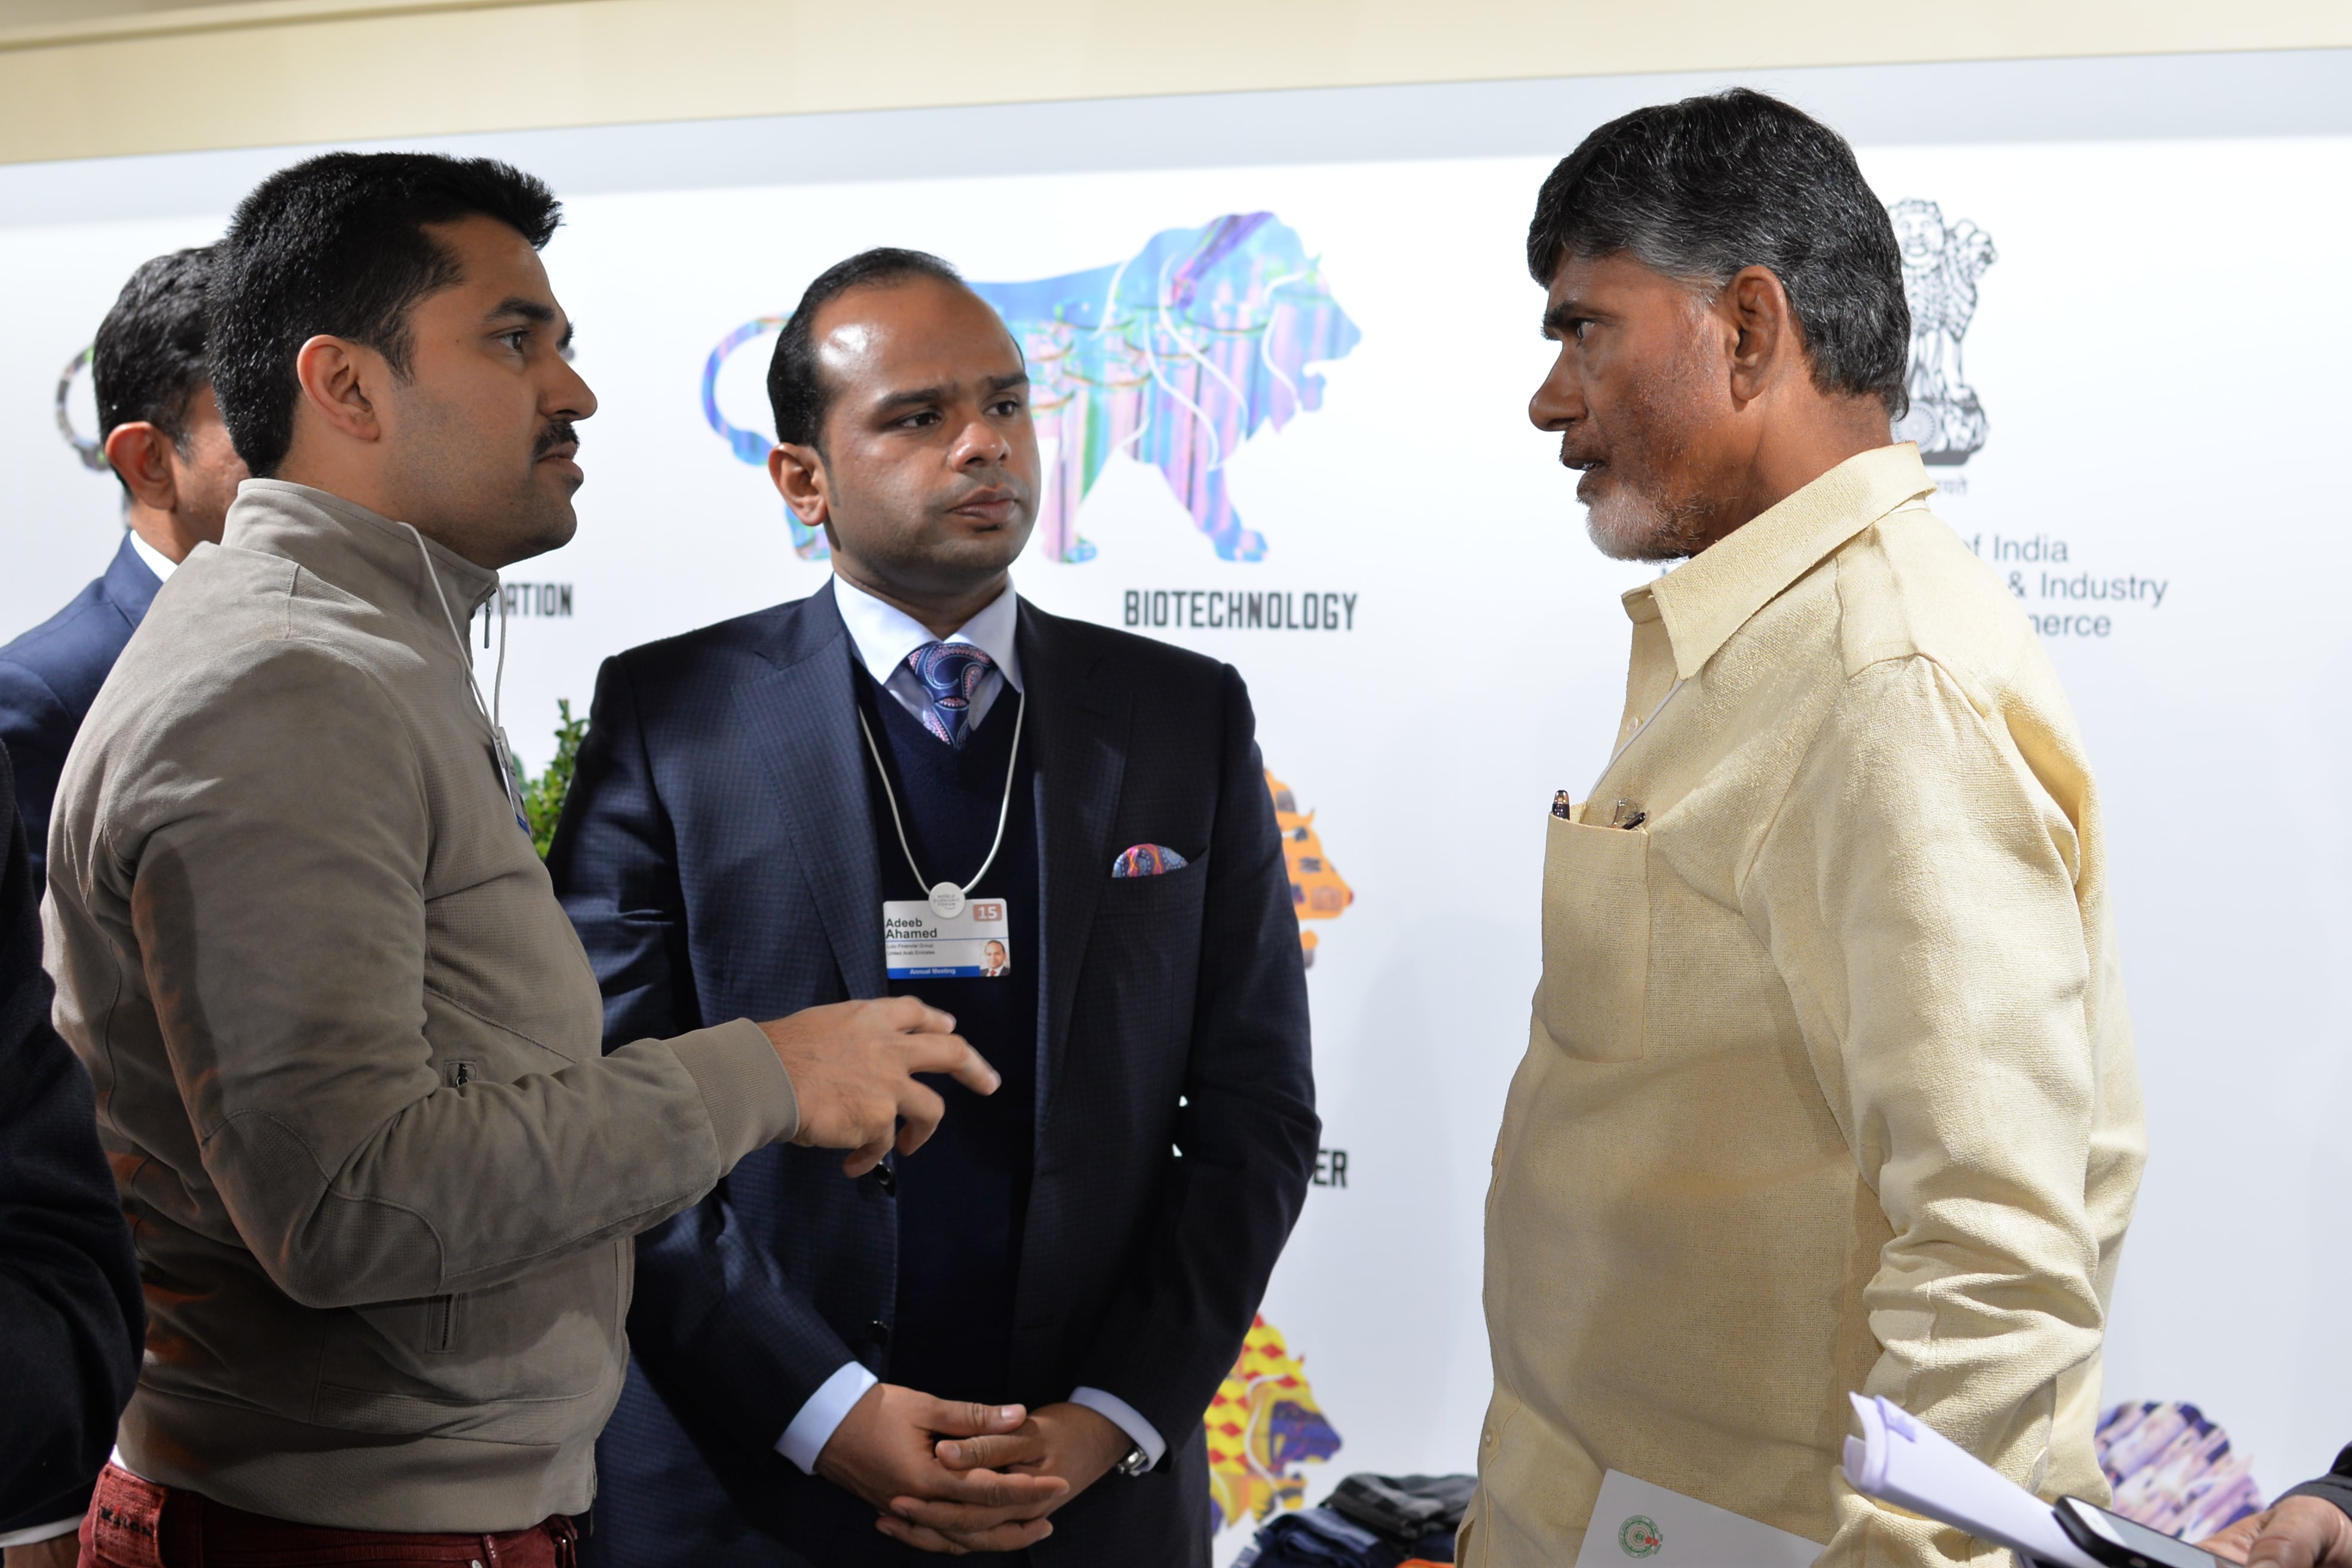 With N. Chandrababu Naidu, Chief Minister of Andhra Pradesh, India